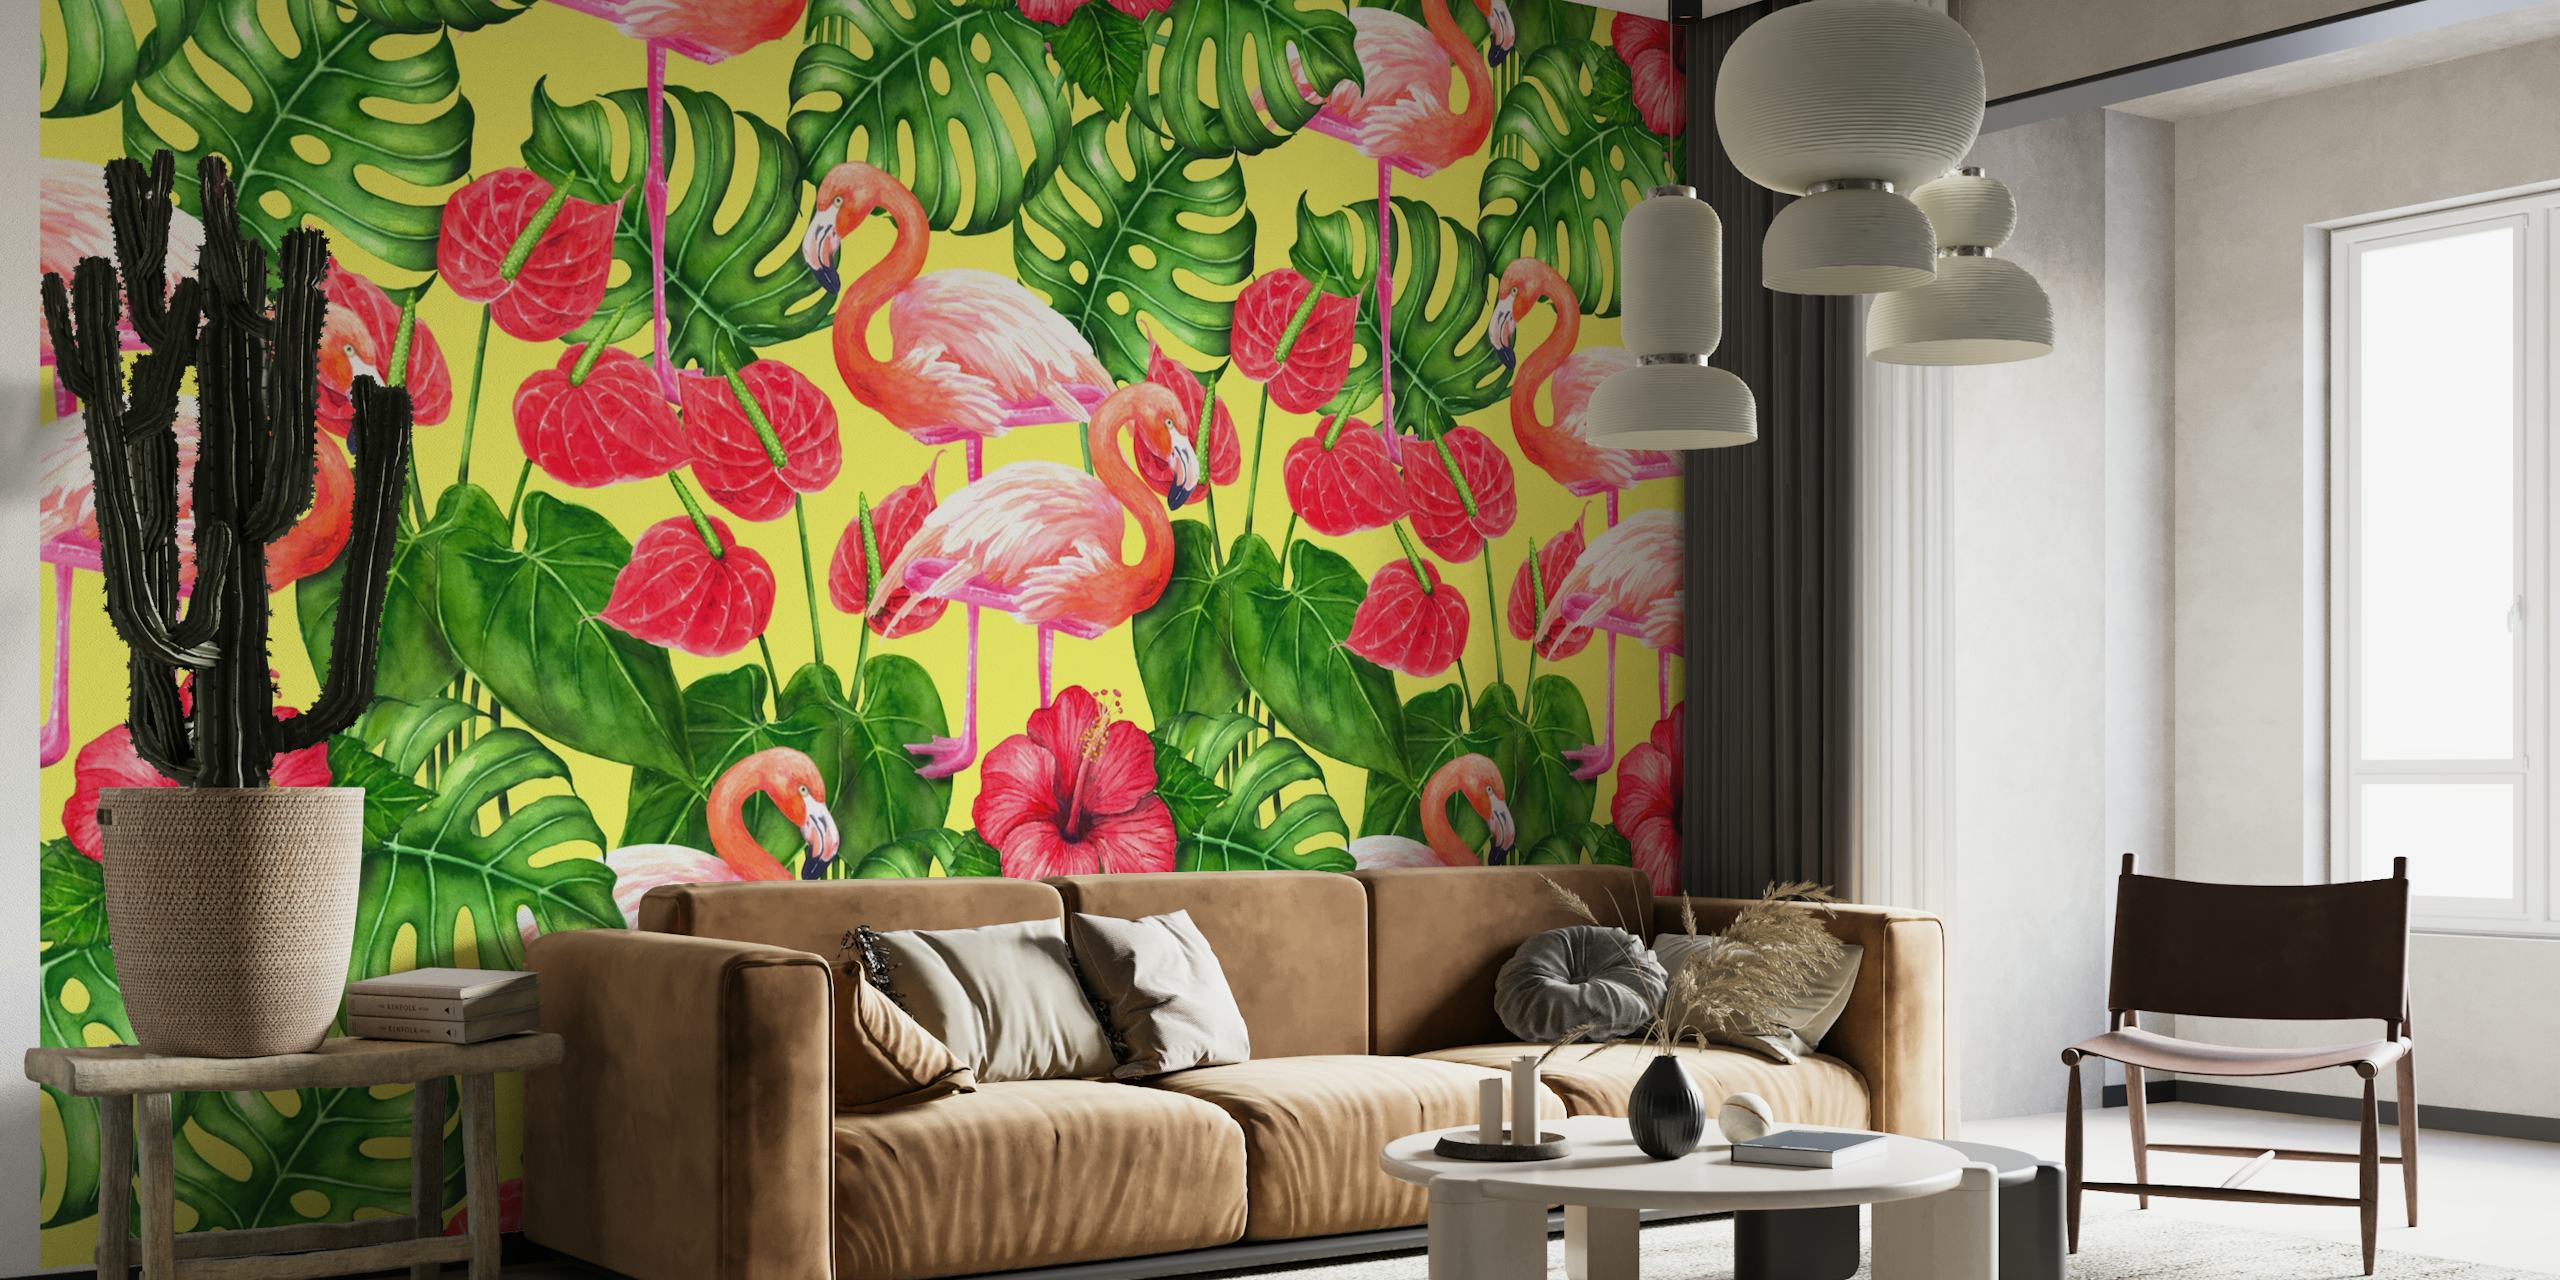 Flamingo and tropical garden 2 behang